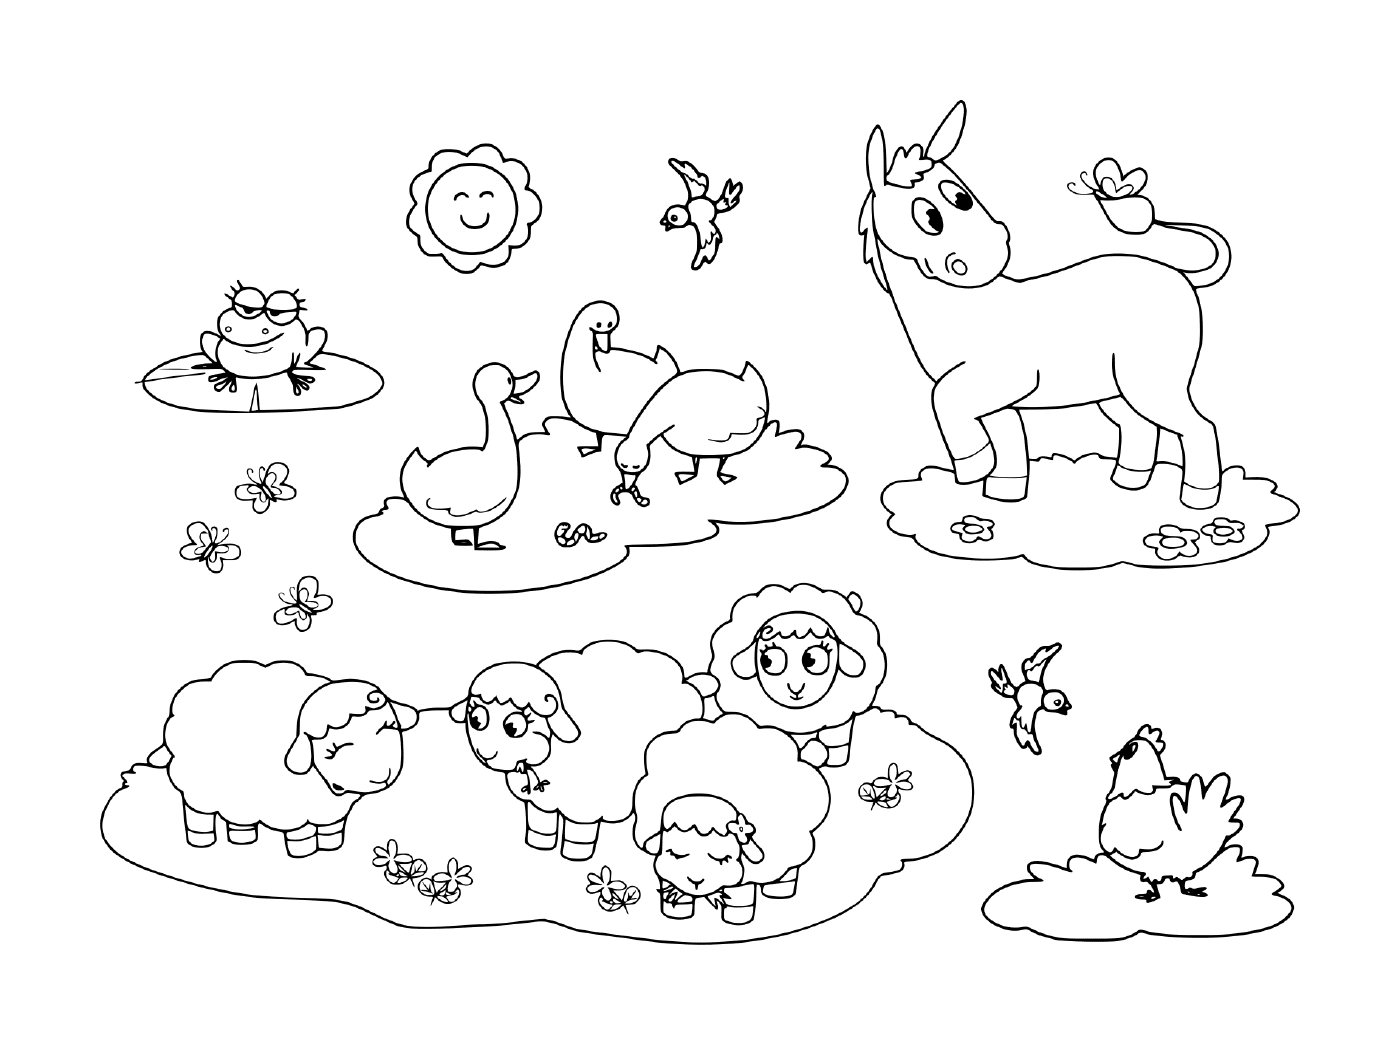  um grupo de animais na grama, incluindo um burro, um ganso, uma galinha, ovelhas e um sapo 